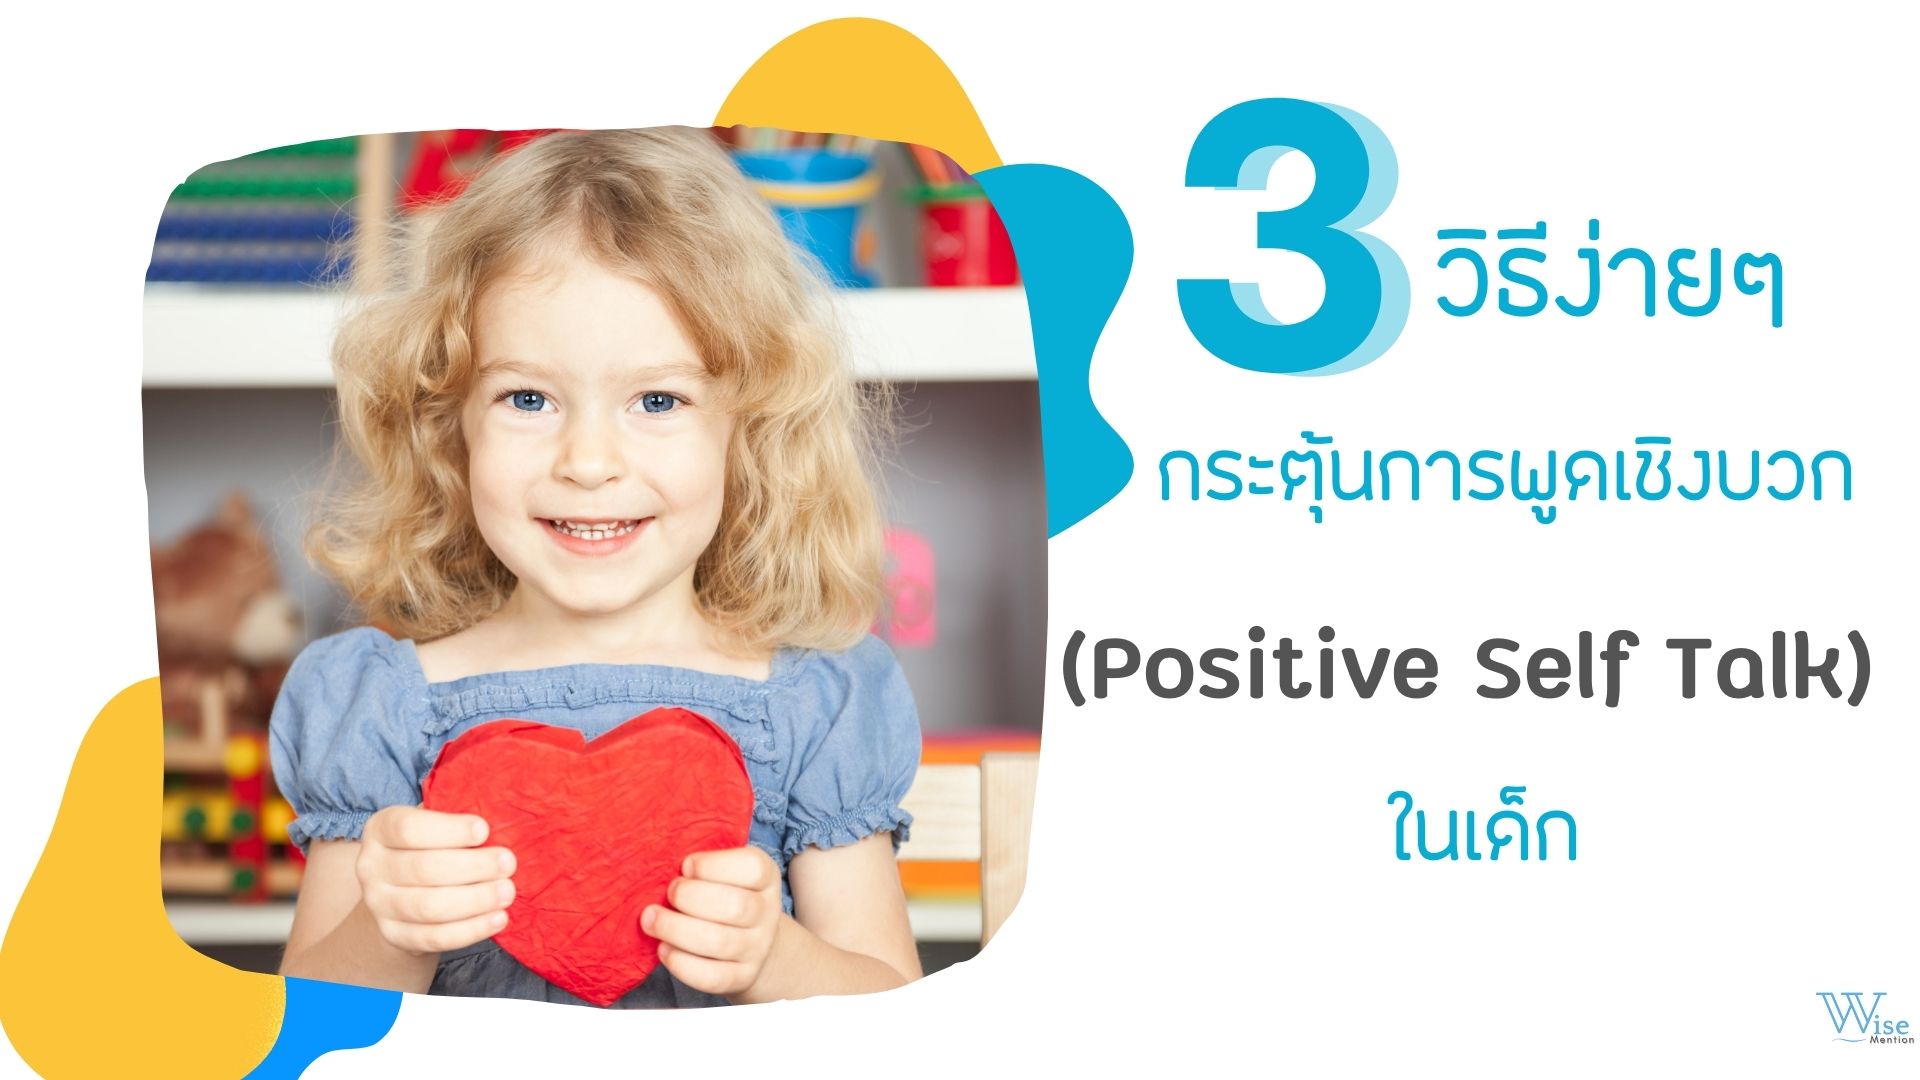 3 วิธีง่าย ๆ การกระตุ้น positive self talk สำหรับเด็ก